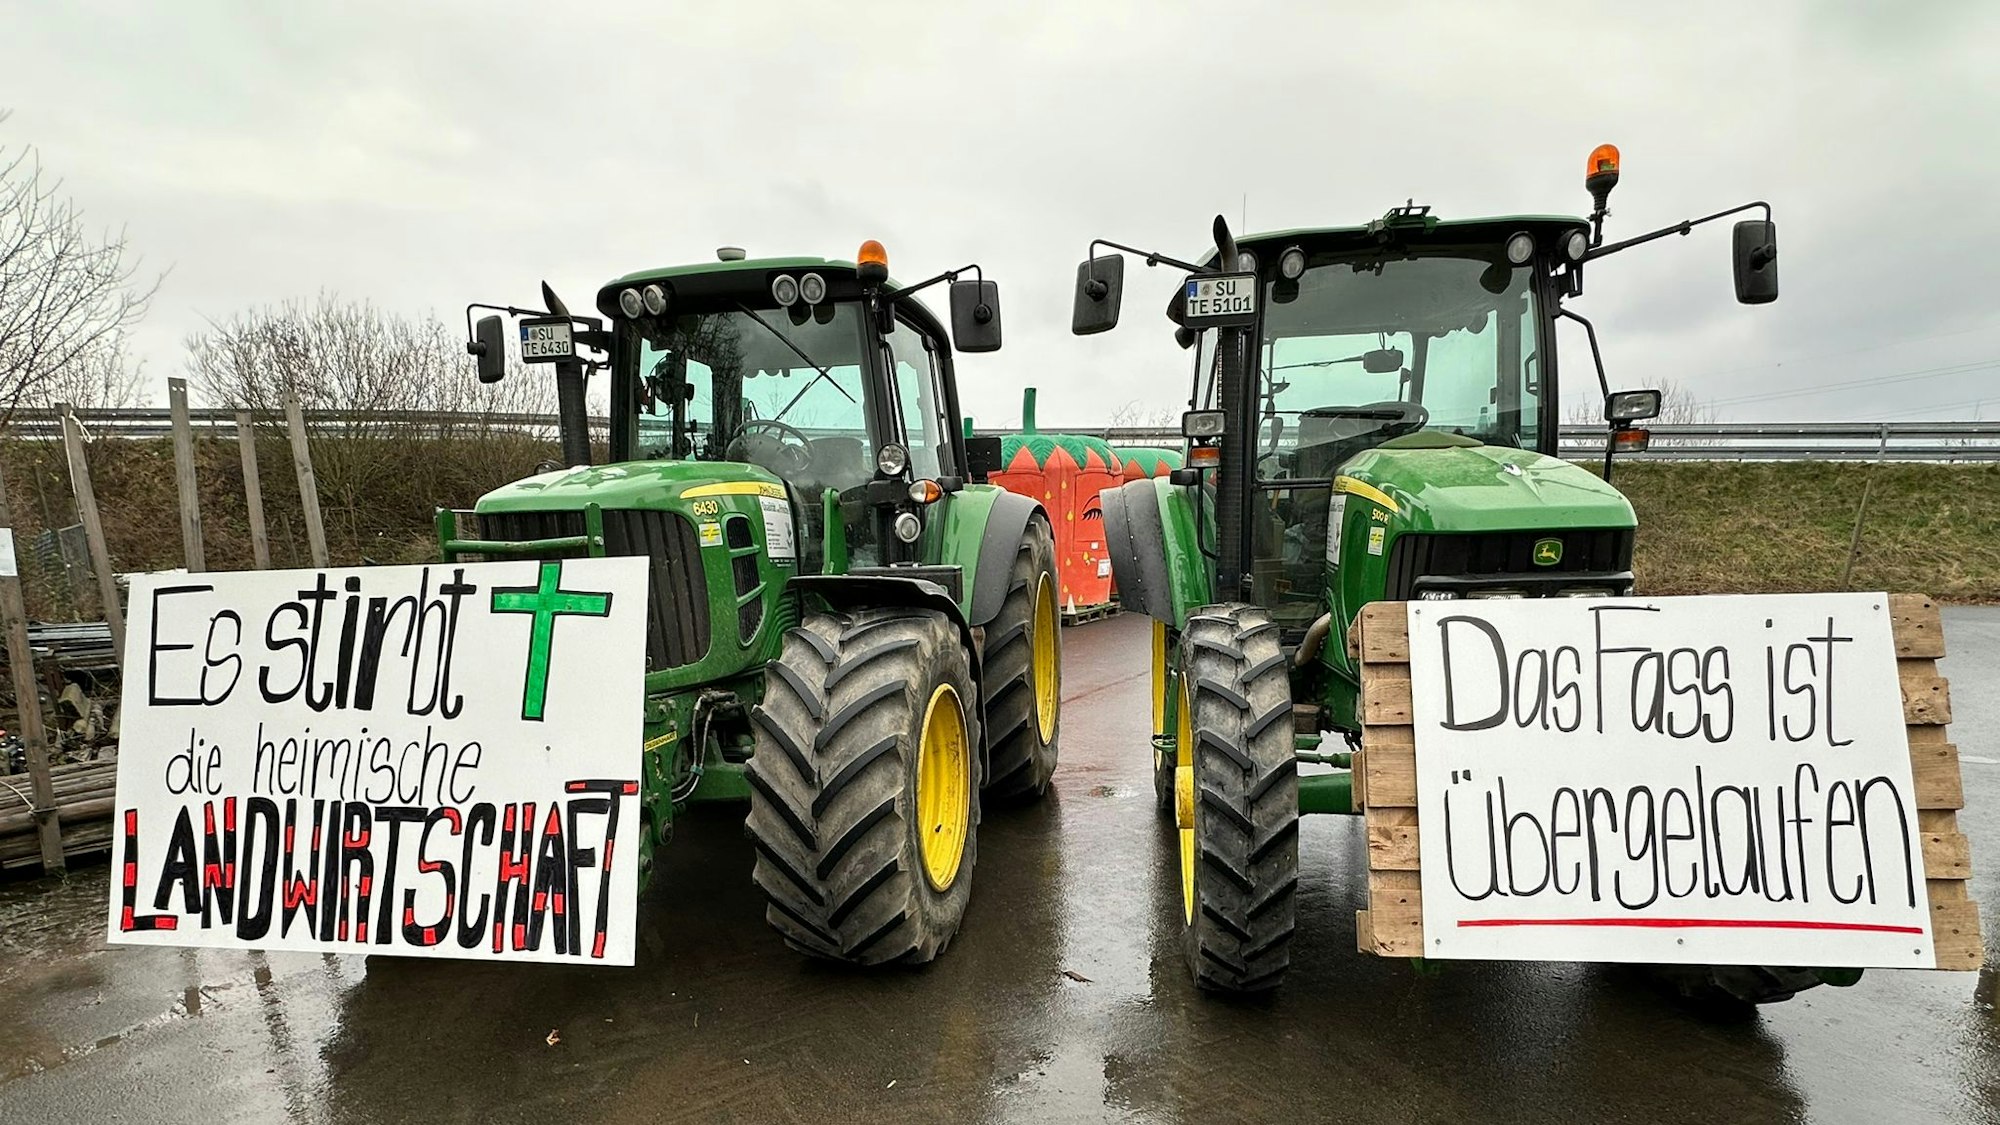 Die Bauern im Rhein-Sieg-Kreis sind für die Protestaktionen vorbereitet. An den Traktoren sind Protestplakate angebracht. Auf ihnen steht:„Esstirbt die heimische Landwirtschaft“ und „Das Fass ist übergelaufen“.